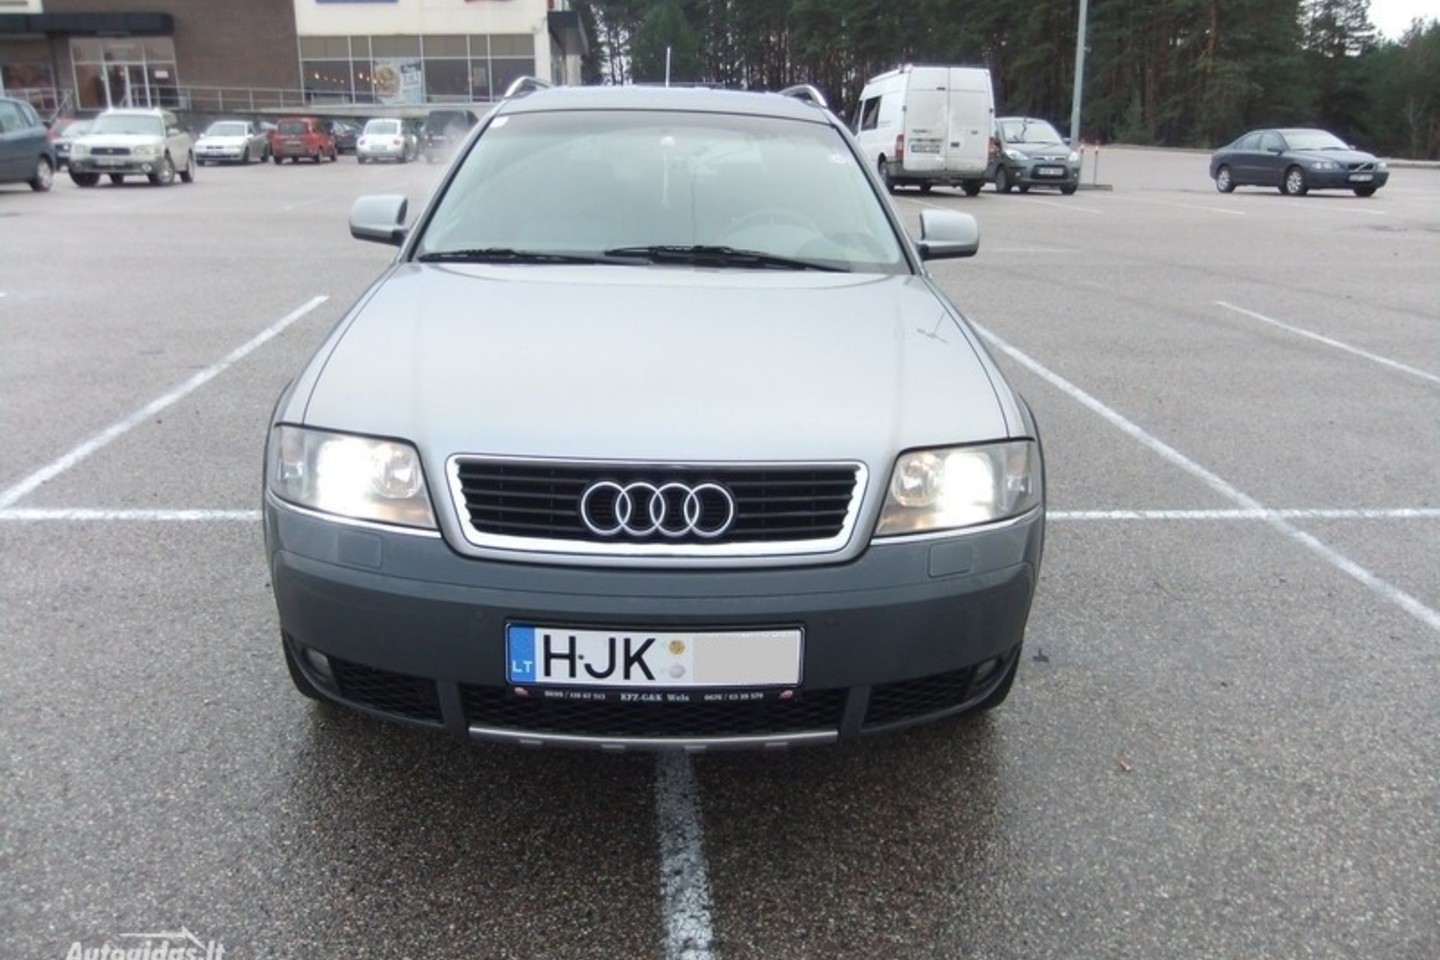 Naudotos „Audi“ pardavėjas išsidavė, kad rida atsukta.<br>Ekrano nuotr.